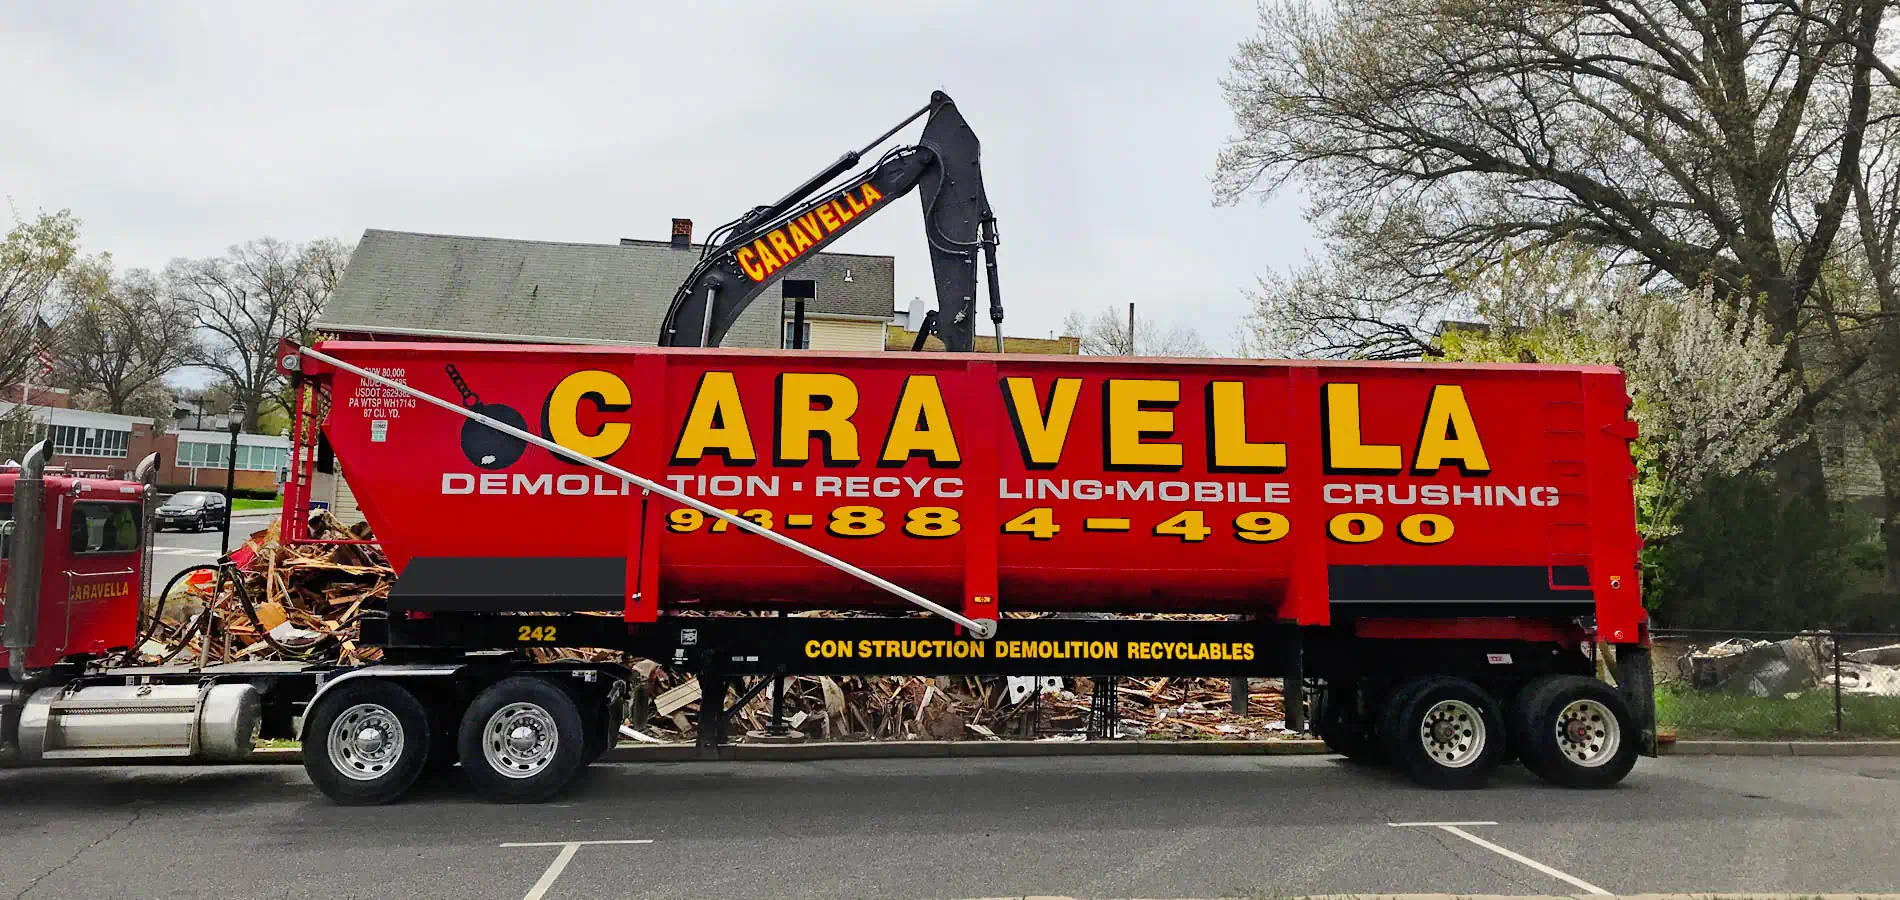 Demolition Services in Ocean County, NJ | Caravella Demolition